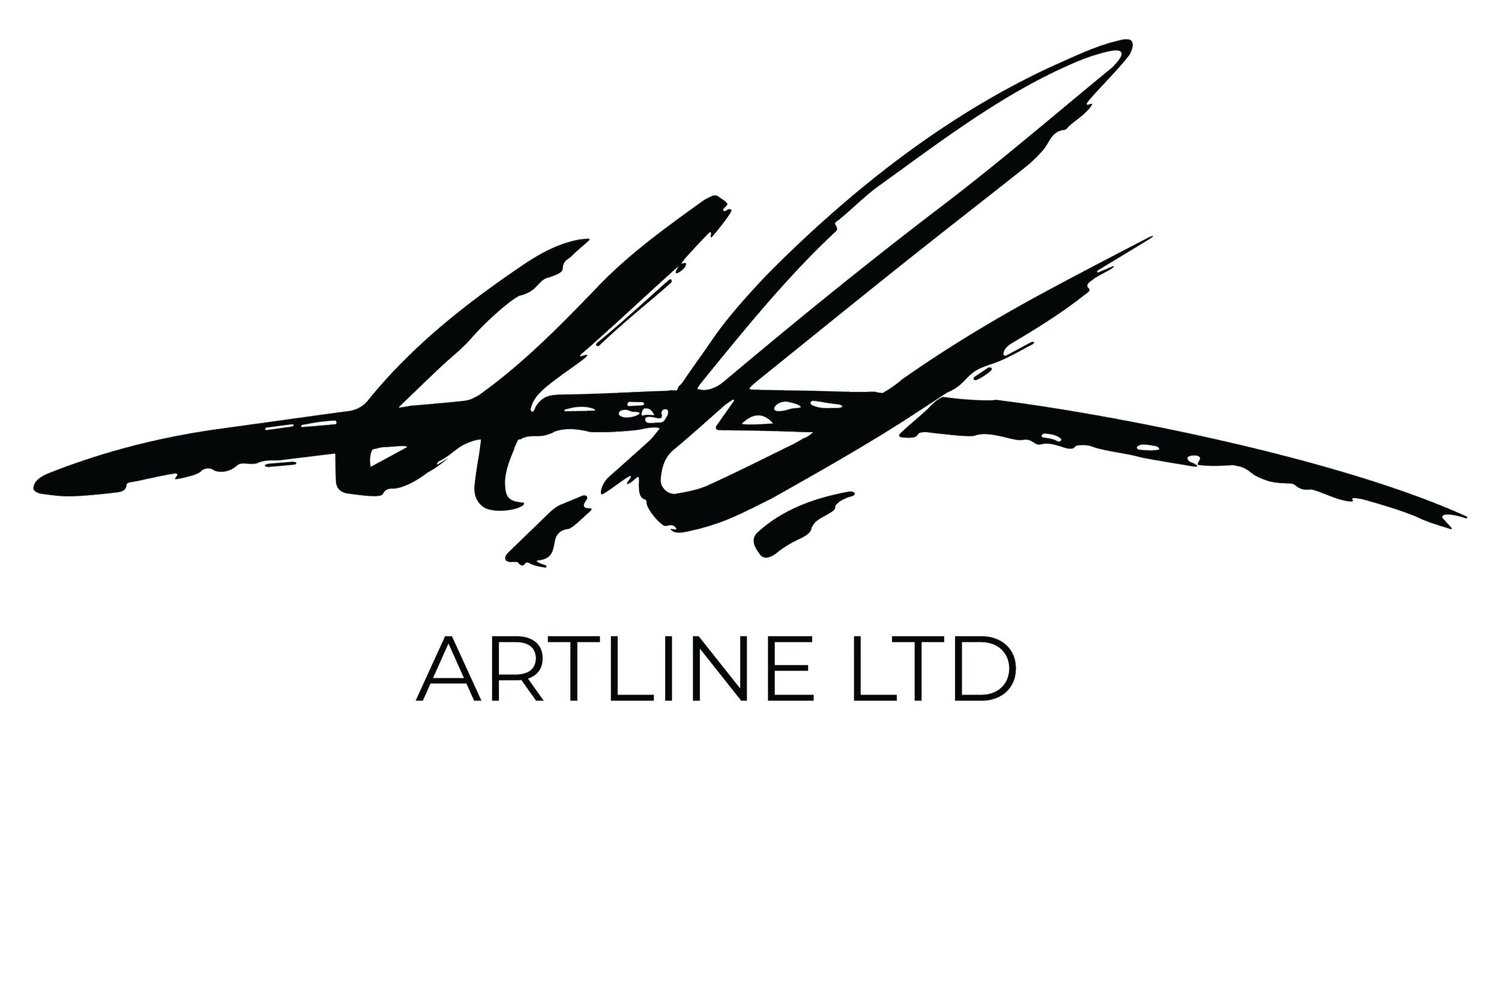 ArtLine LTD